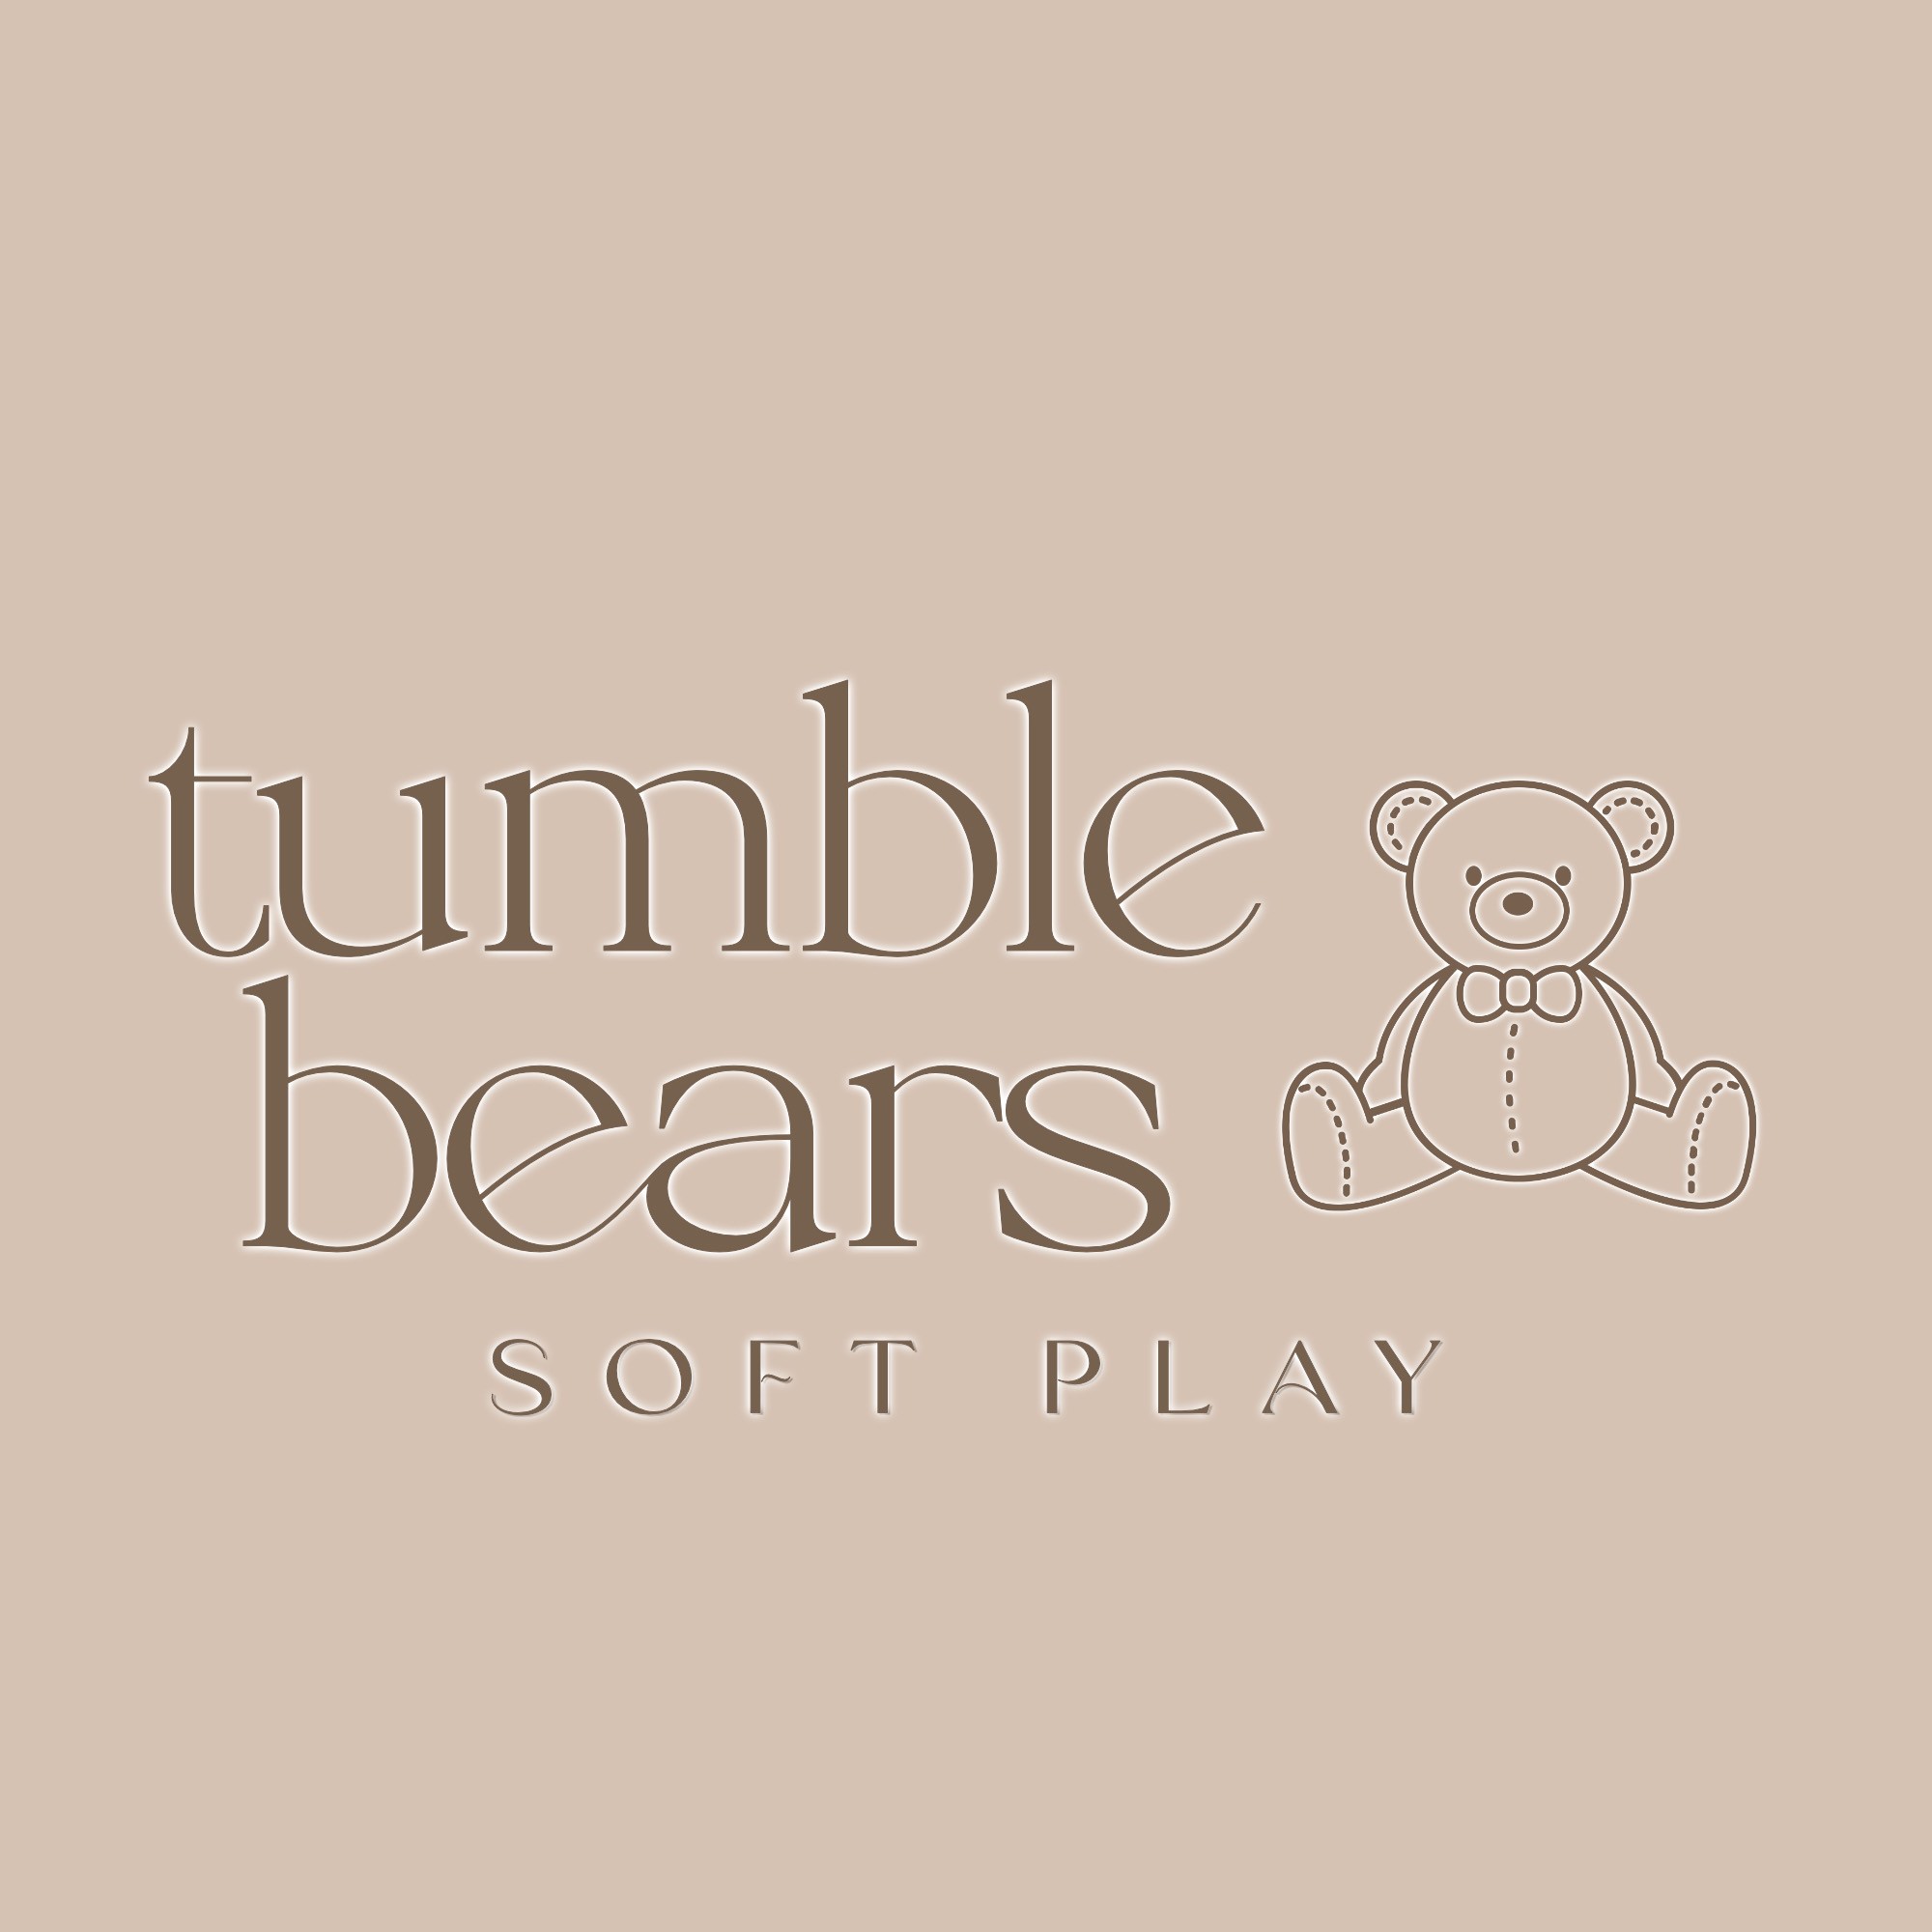 Tumble Bears Soft Play Hire's logo